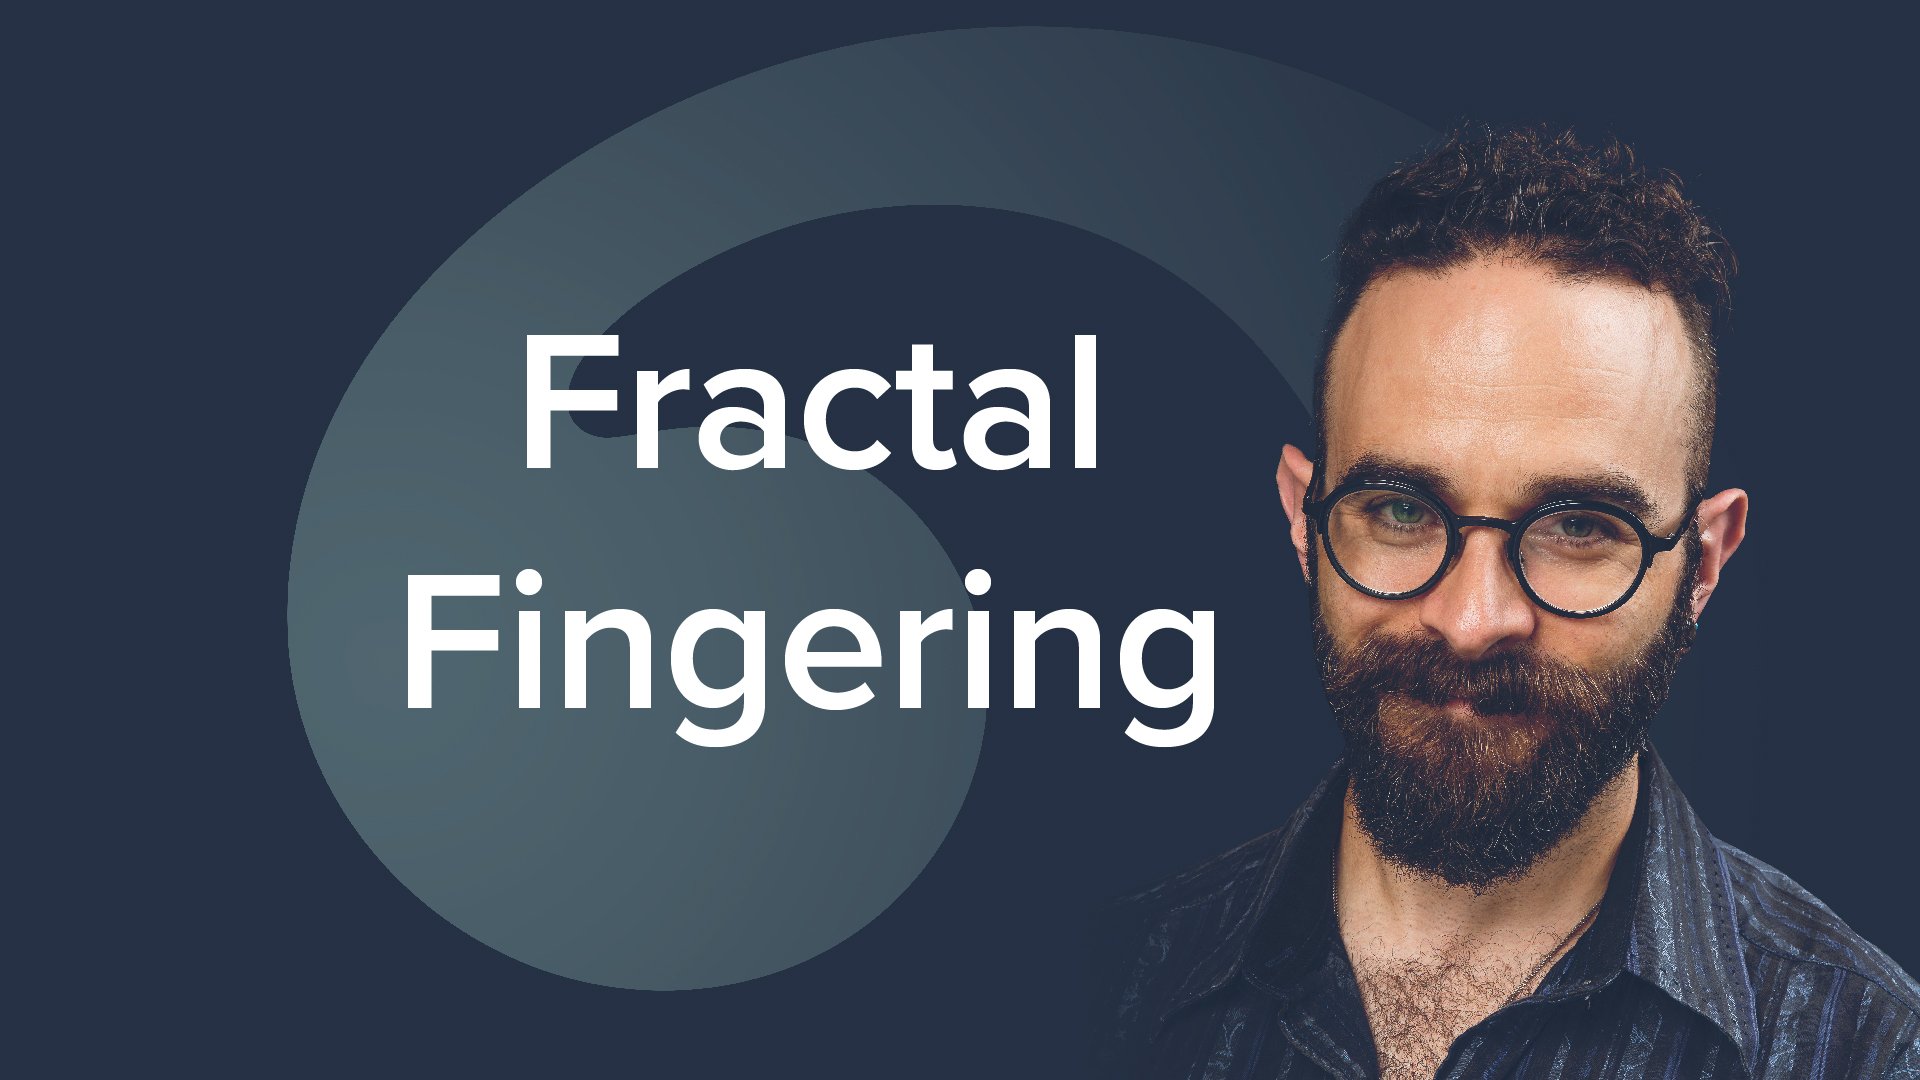 Fractal Fingering